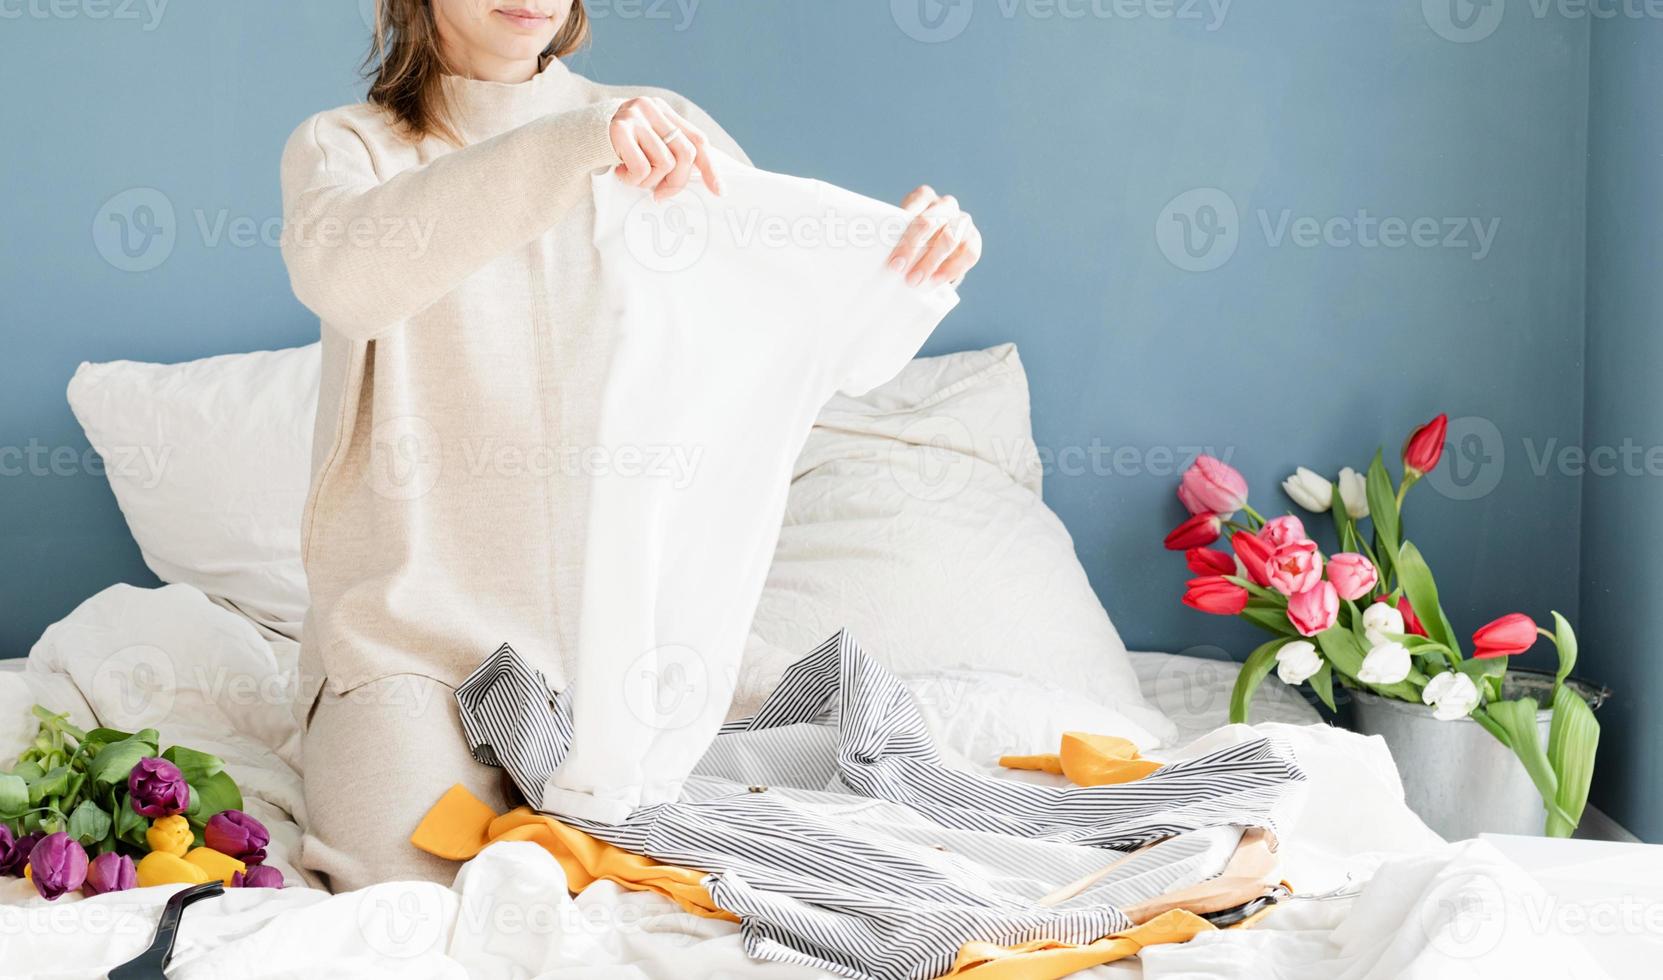 jonge vrouw die kleren organiseert die thuis op het bed zitten foto